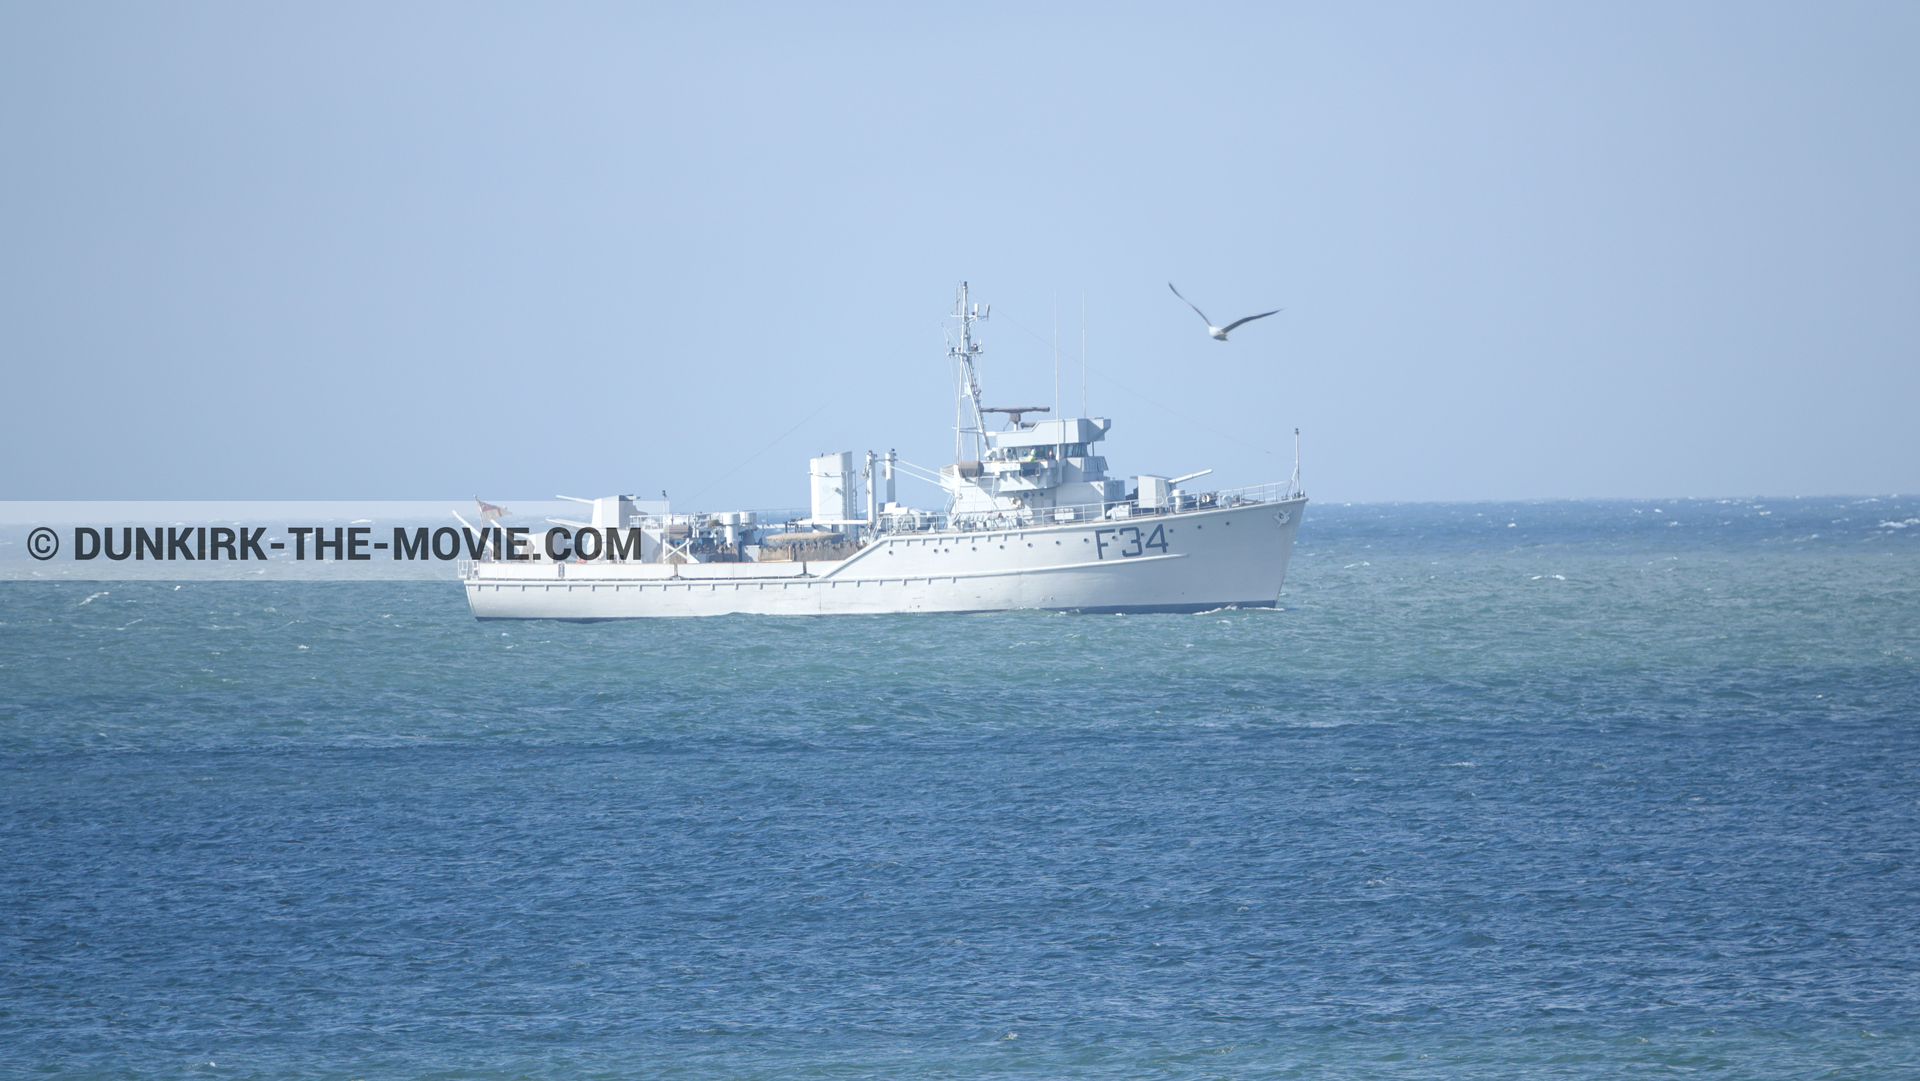 Fotos con cielo azul, F34 - Hr.Ms. Sittard, mares calma,  durante el rodaje de la película Dunkerque de Nolan